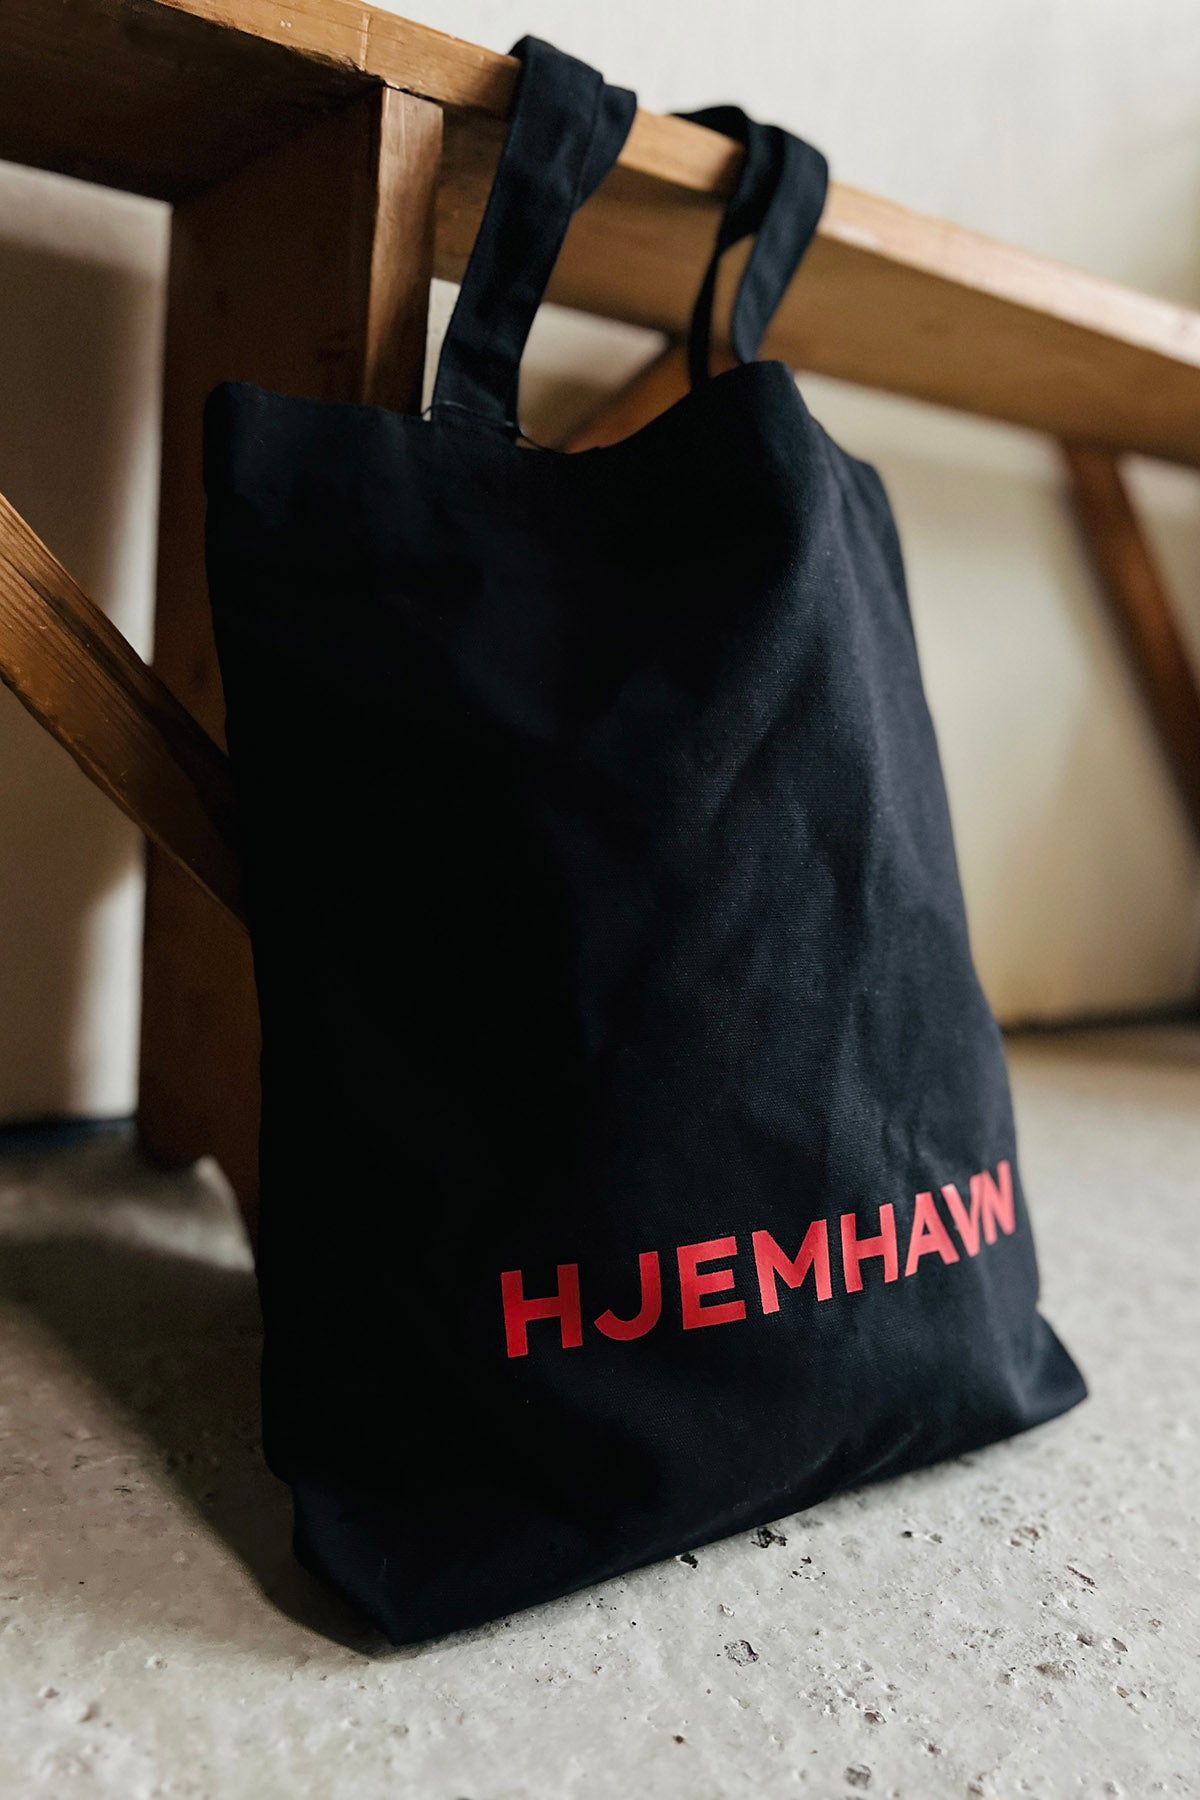 Shopping Bag "Hjemhavn" - Recycled